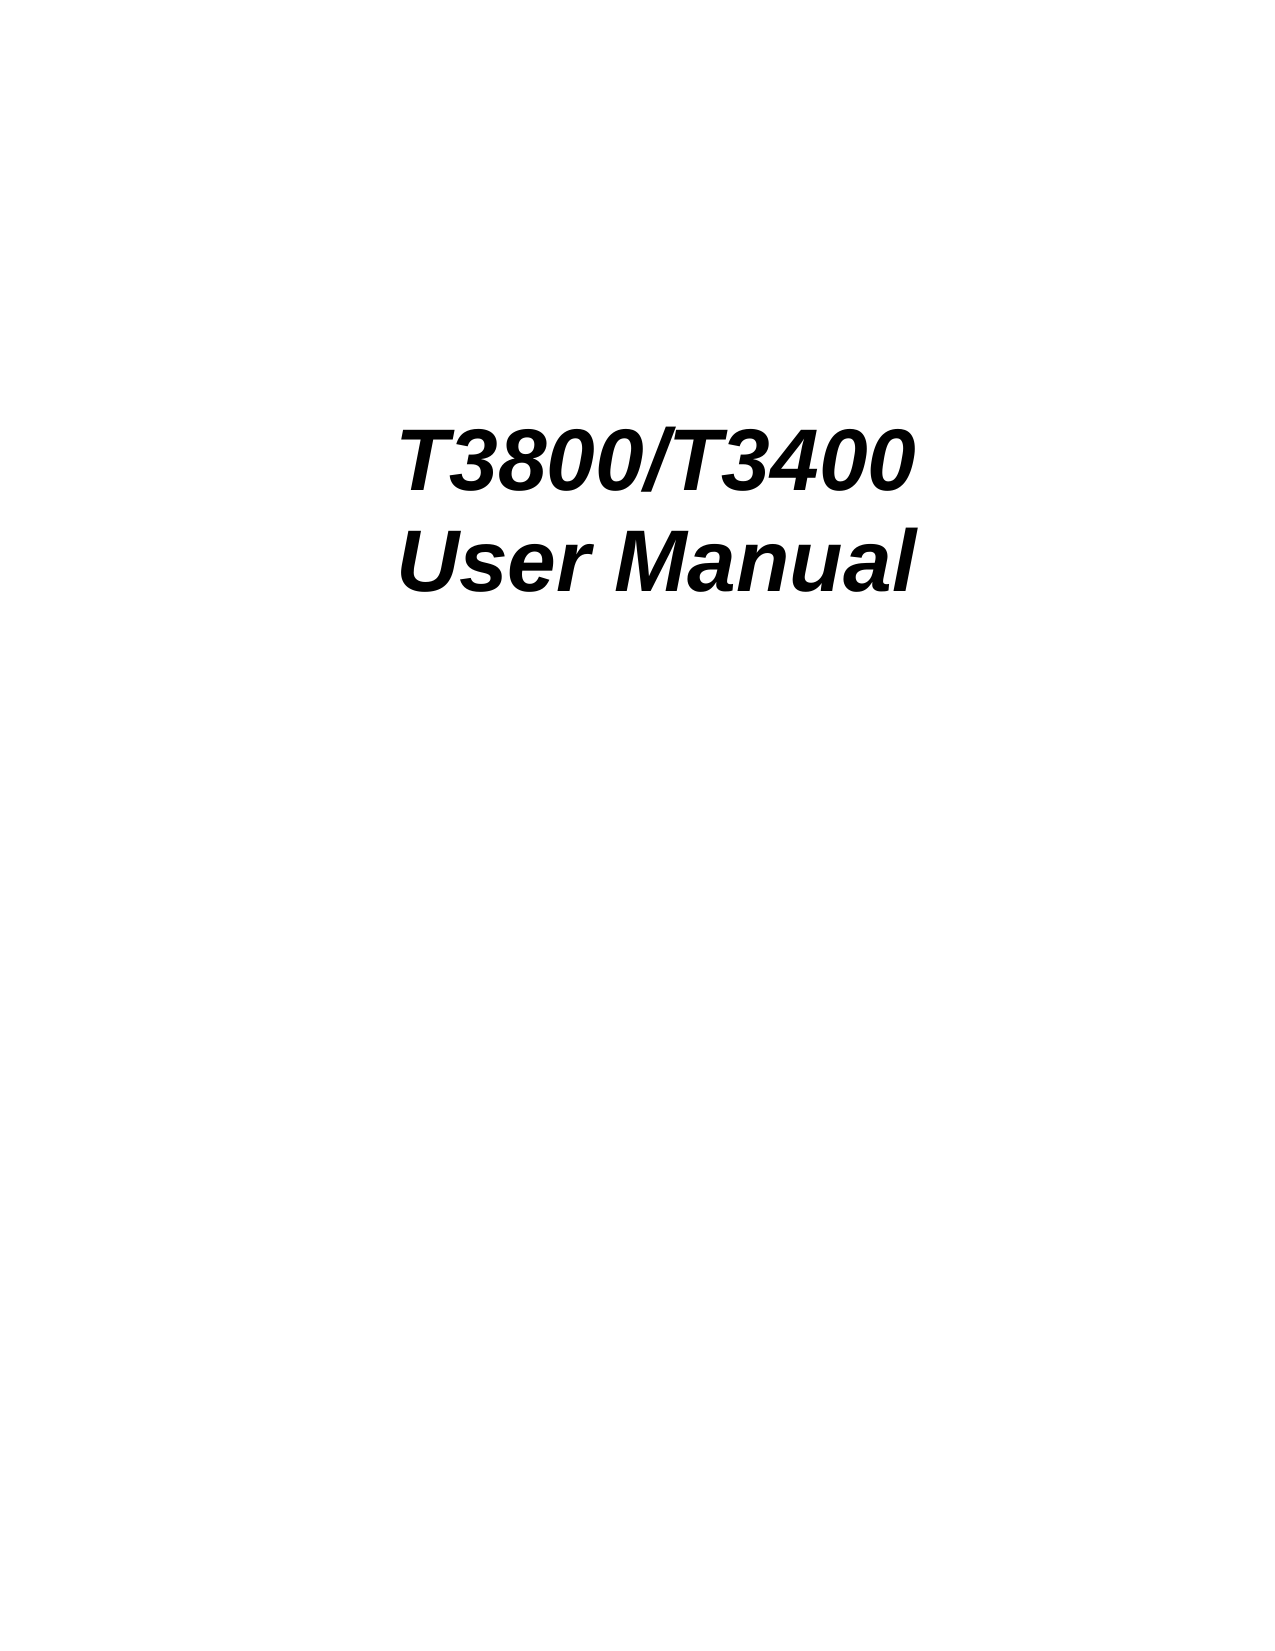          T3800/T3400 User Manual      